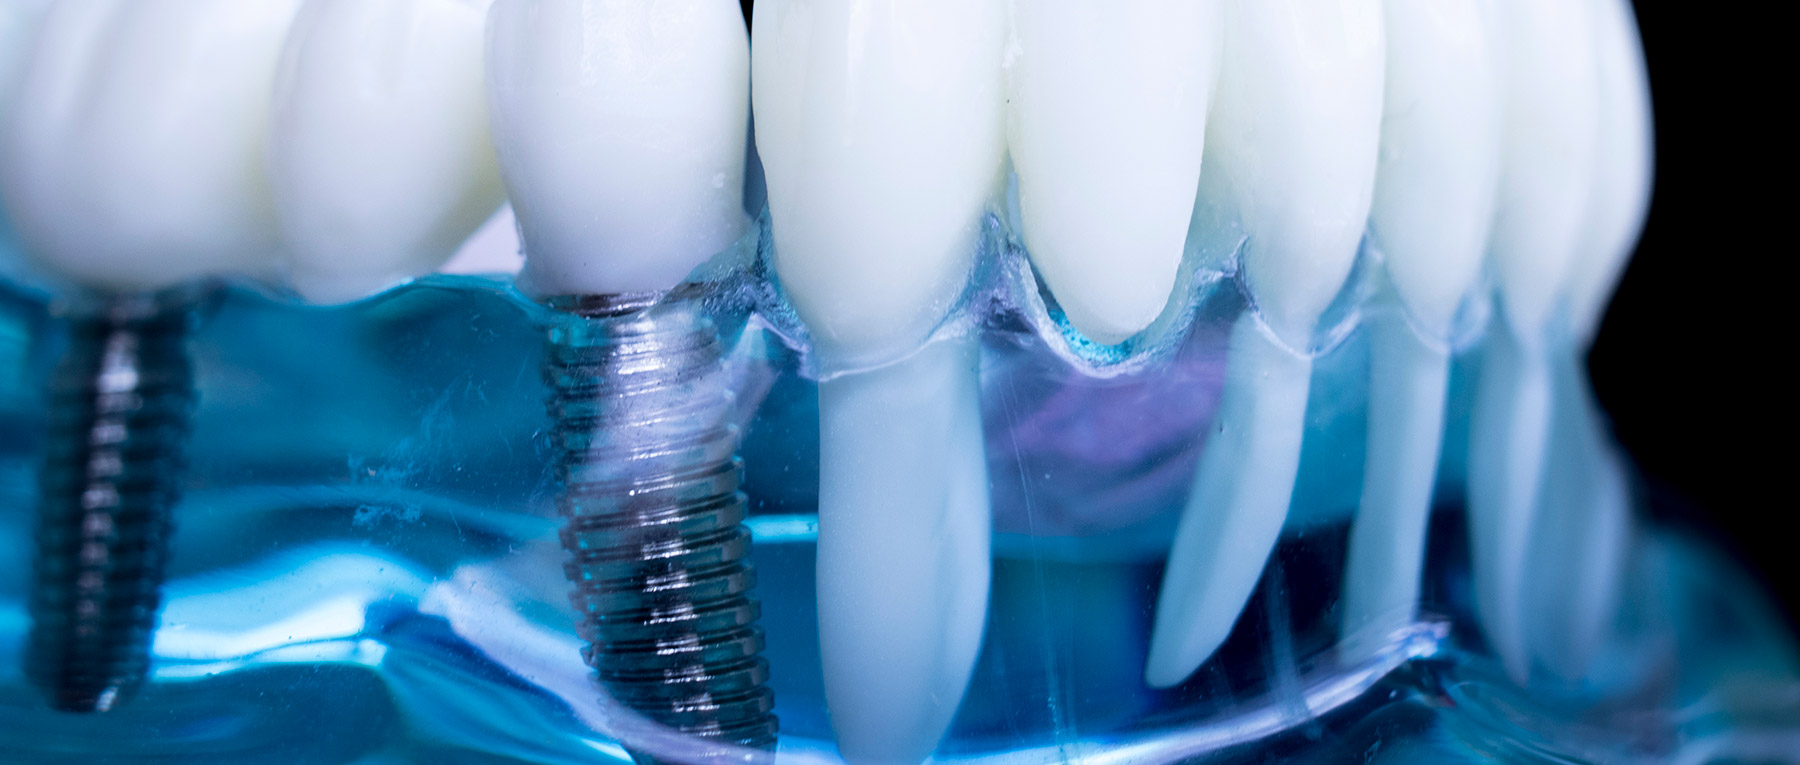 impianti dentali Brescia